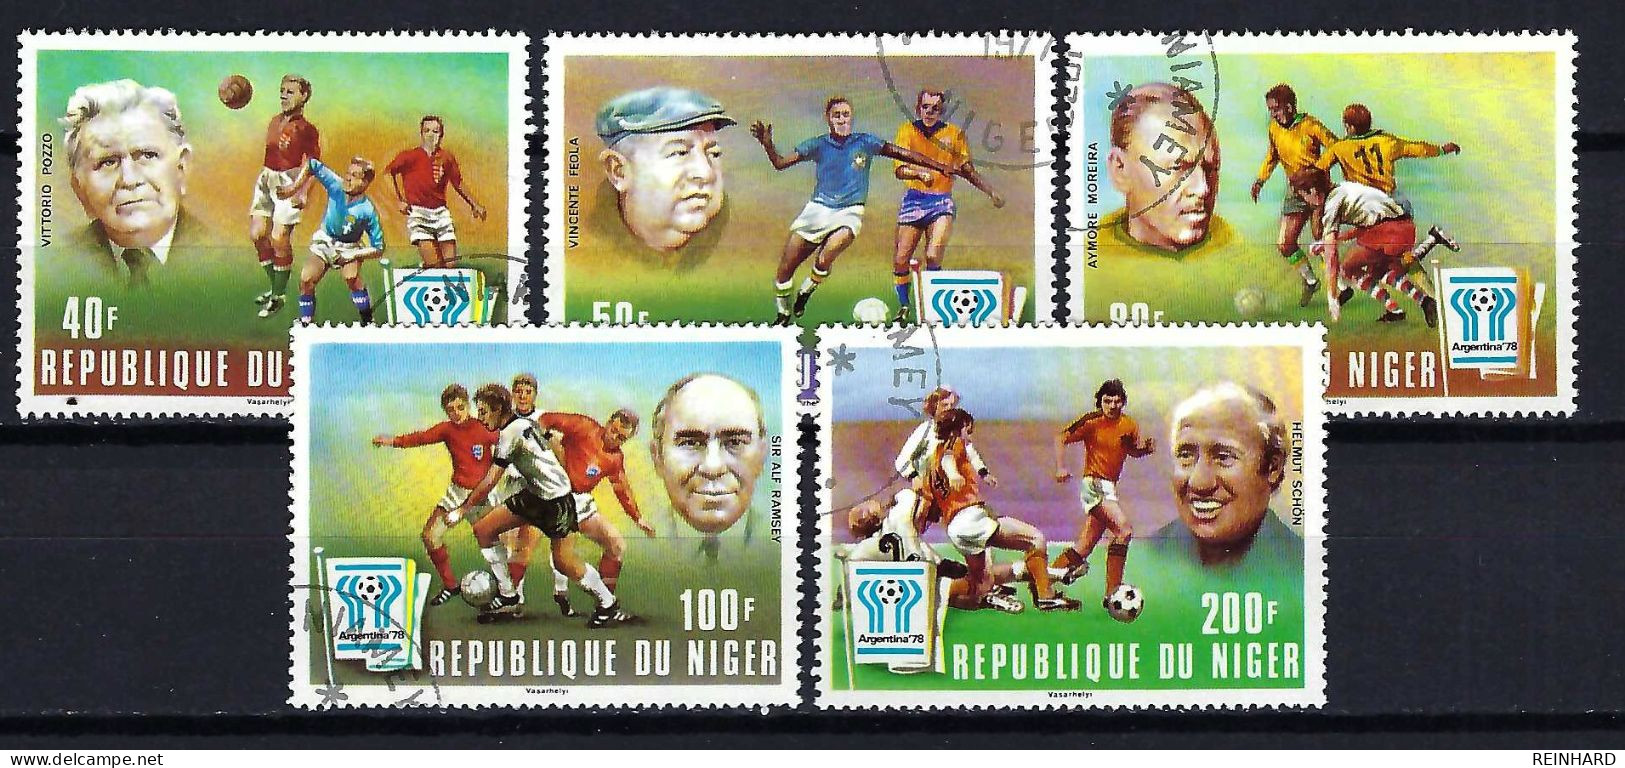 NIGER Komplettsatz Mi-Nr. 593 - 597 Fußball-Weltmeisterschaft 1978, Argentinien Gestempelt - Siehe Bild - Niger (1960-...)